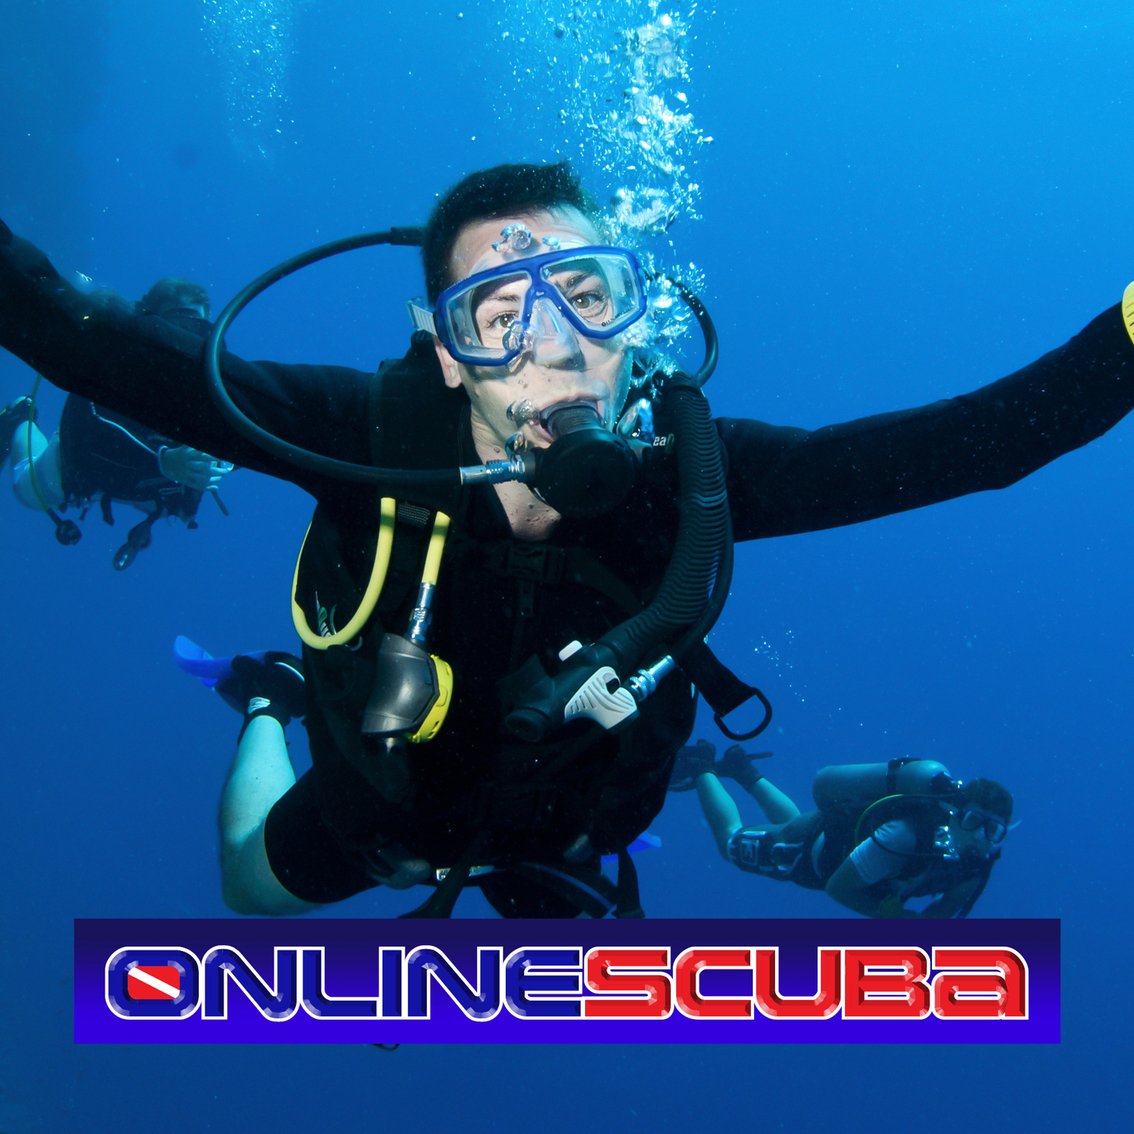 scuba gear online store